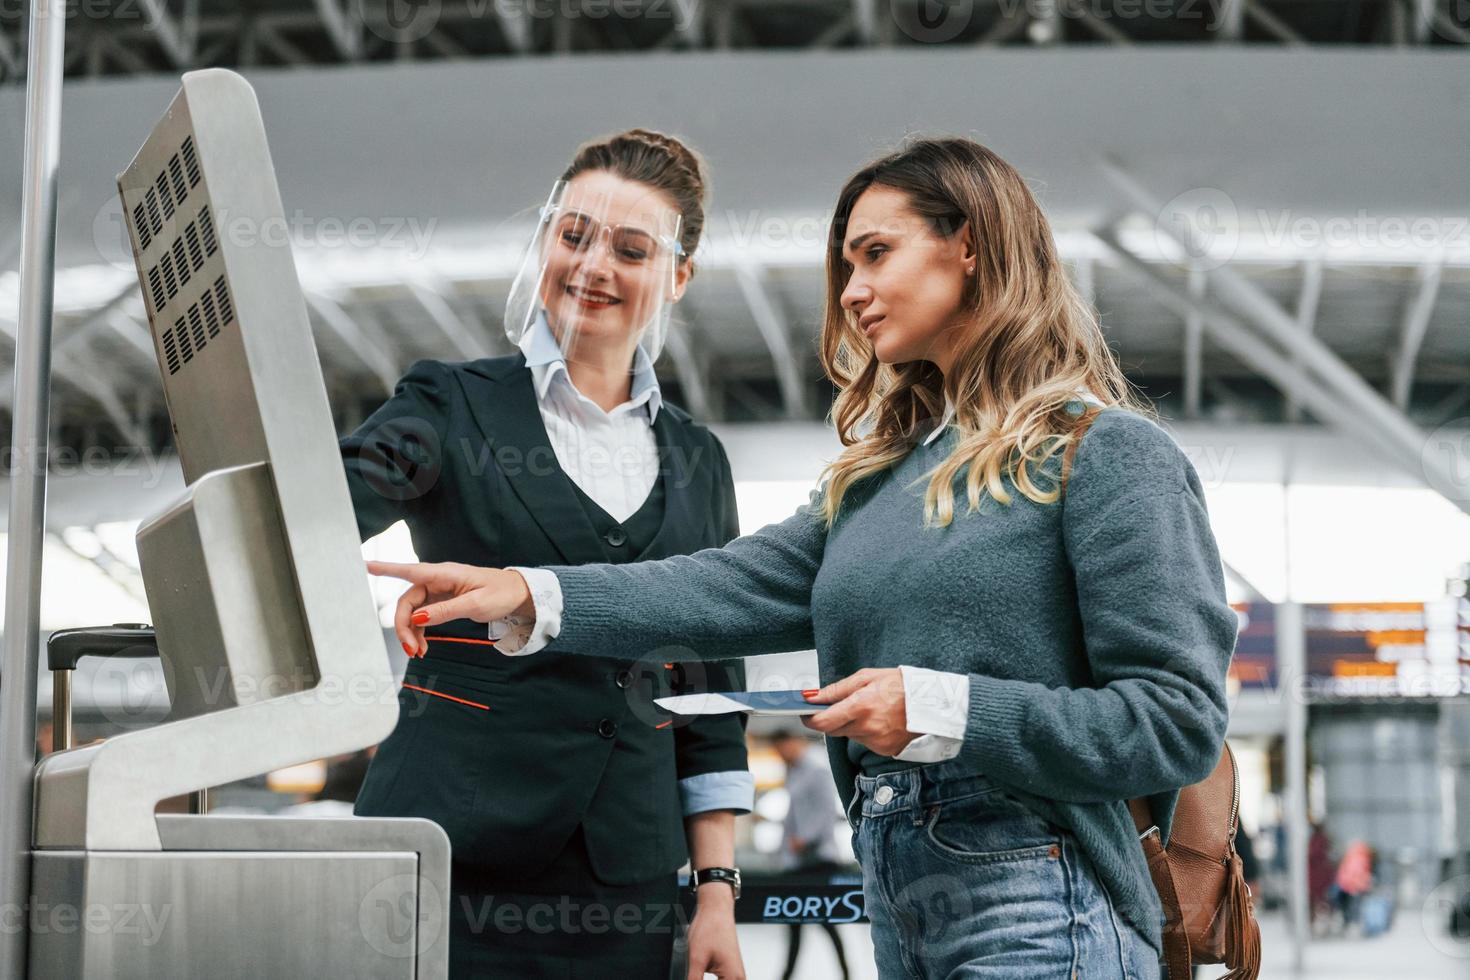 Mitarbeiter hilft bei der Nutzung des Terminals. junge weibliche touristin ist tagsüber am flughafen foto